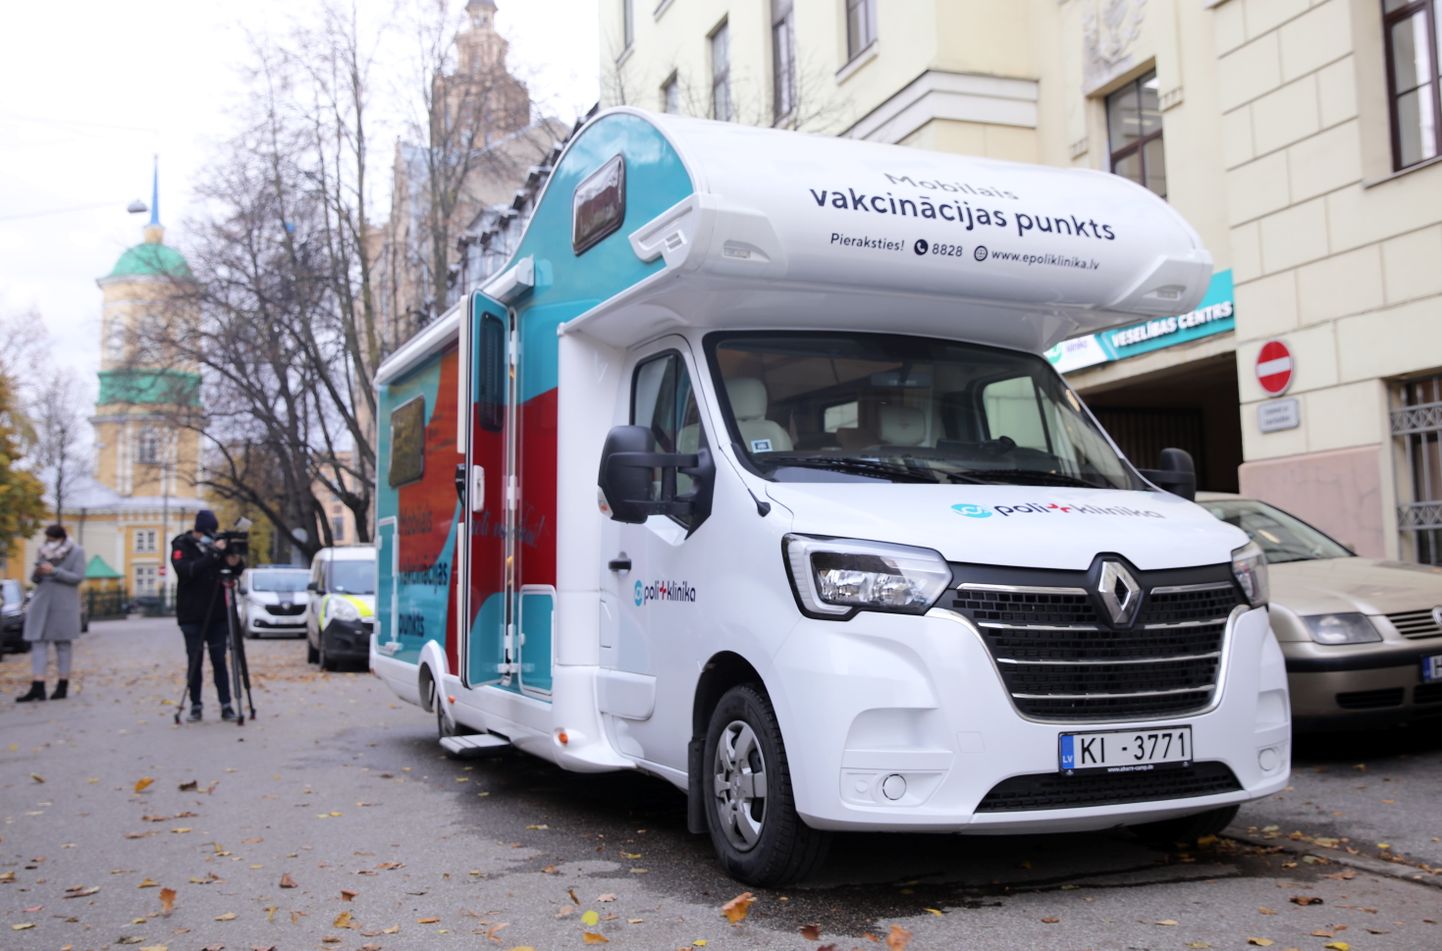 "Veselības centru apvienības" sagatavotais mikroautobuss, kas, atsaucoties pieprasījumam, nodrošinās vakcinācijas procesa pret Covid-19 mobilitāti uzņēmumos un pašvaldībās visā Latvijā.